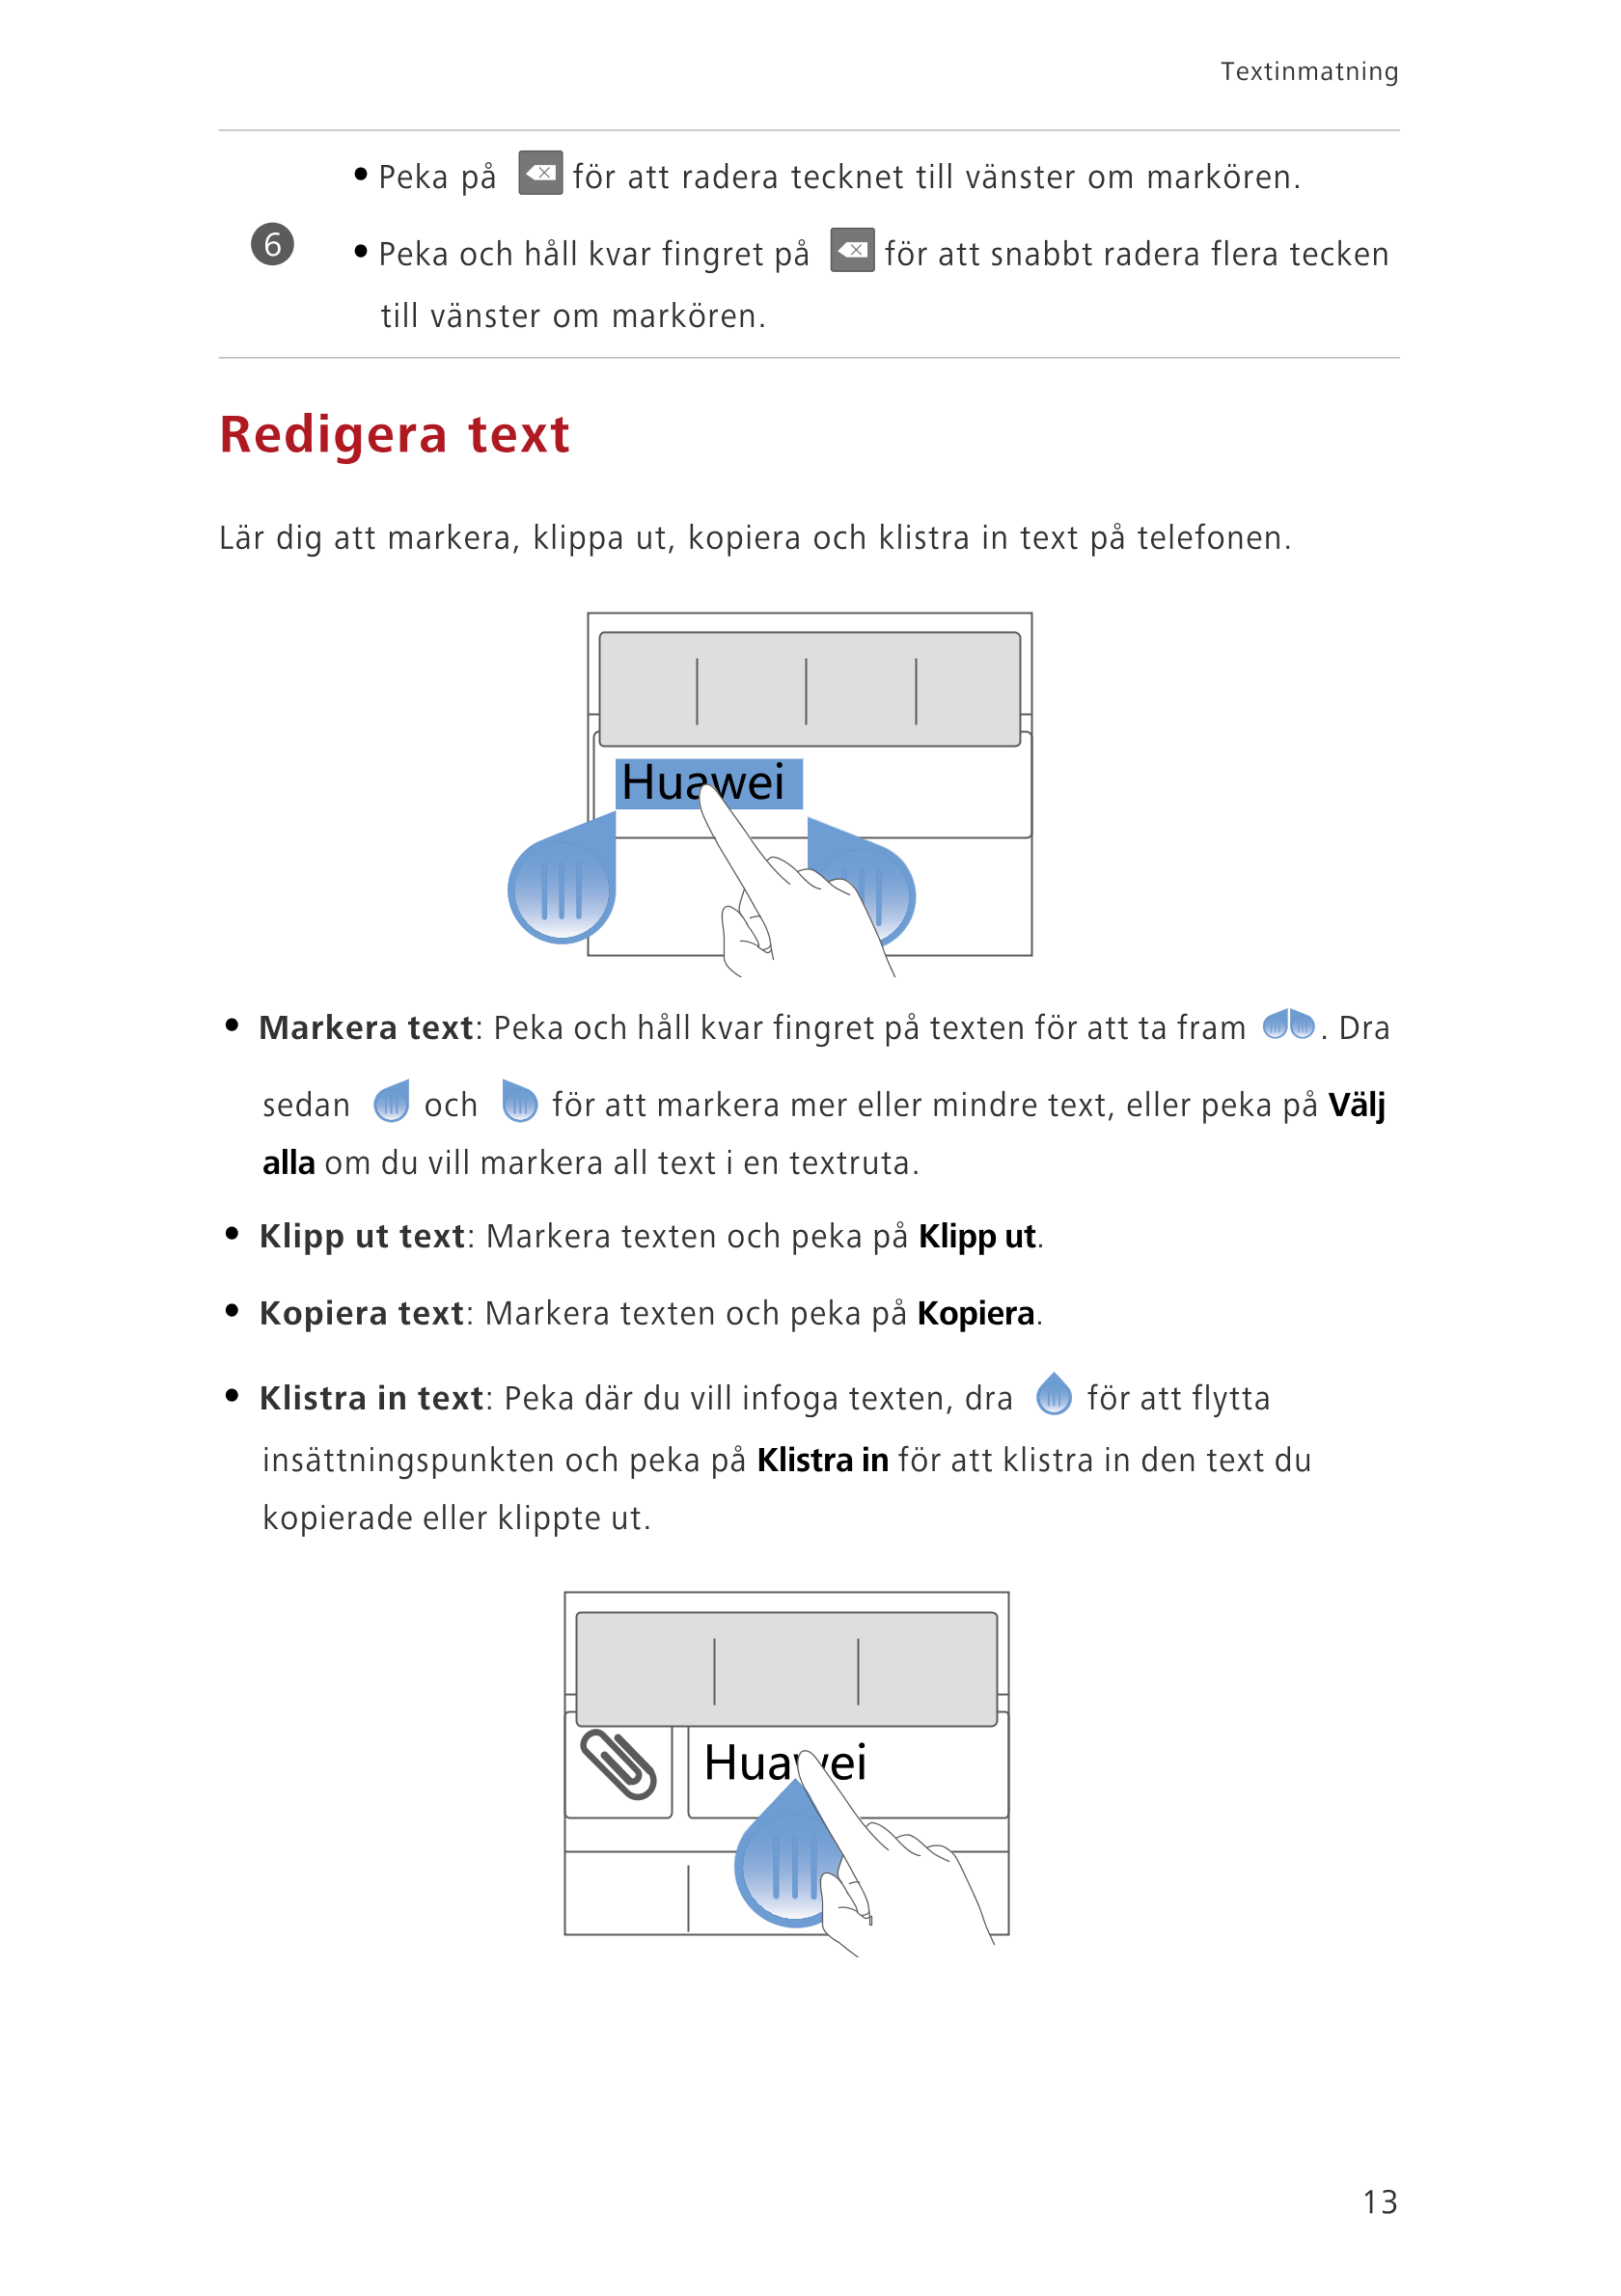 Textinmatning
• Peka på  för att radera tecknet till vänster om markören. 
6 • Peka och håll kvar fingret på  för att snabbt rad